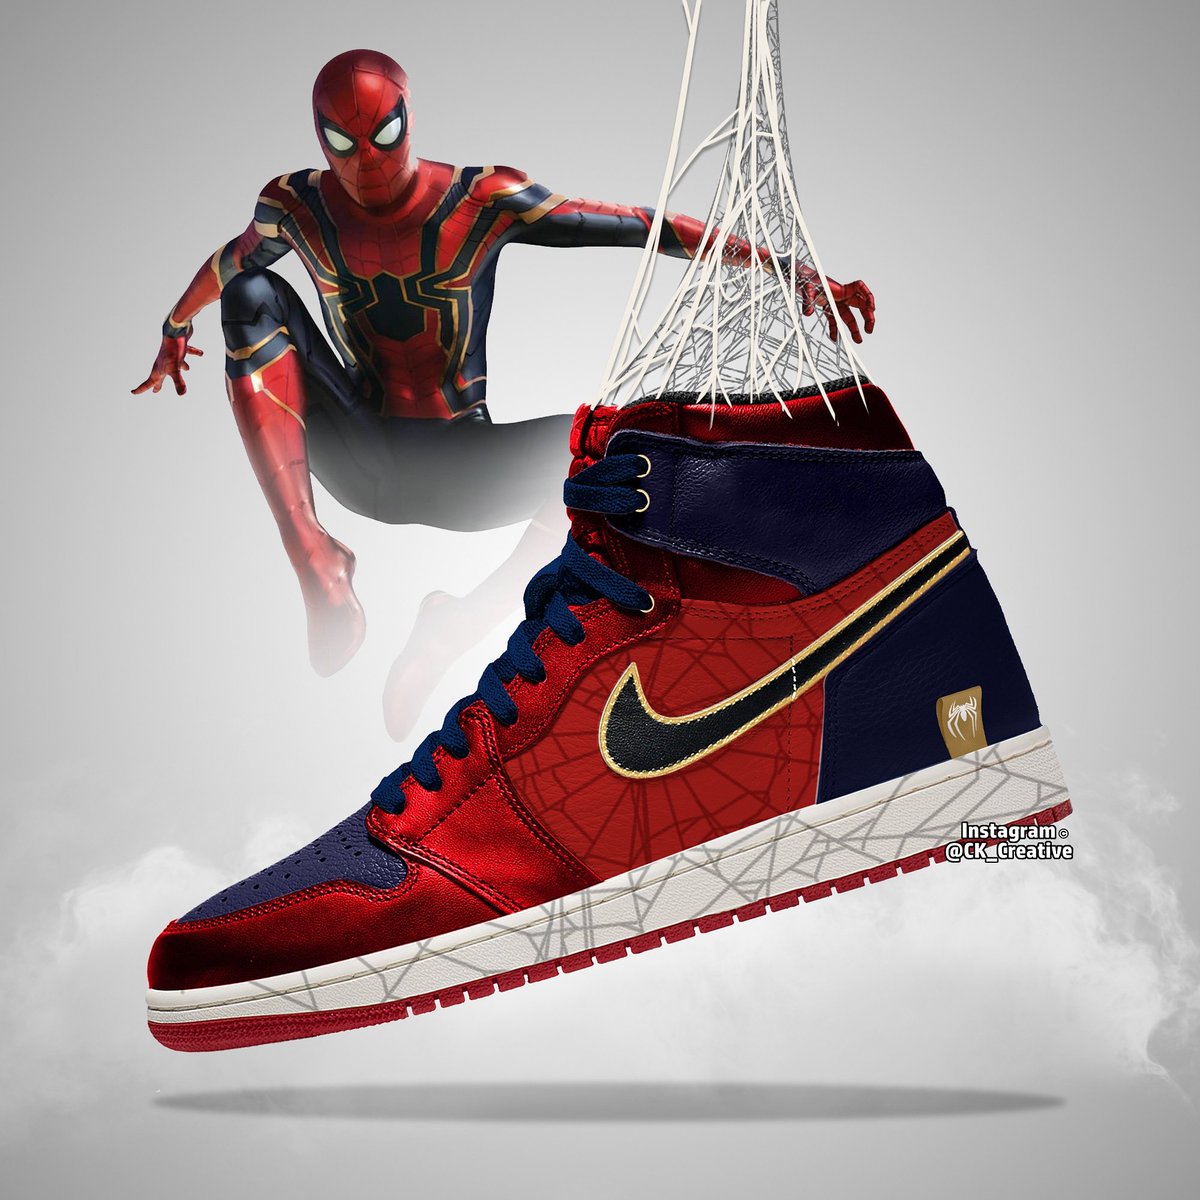 Chris Kemp on "Spiderman Nike Jordan Design #avengersendgame #endgame #spiderman #SpiderVerse #SpiderManFarFromHome #nile https://t.co/FKzdg481gE" / Twitter